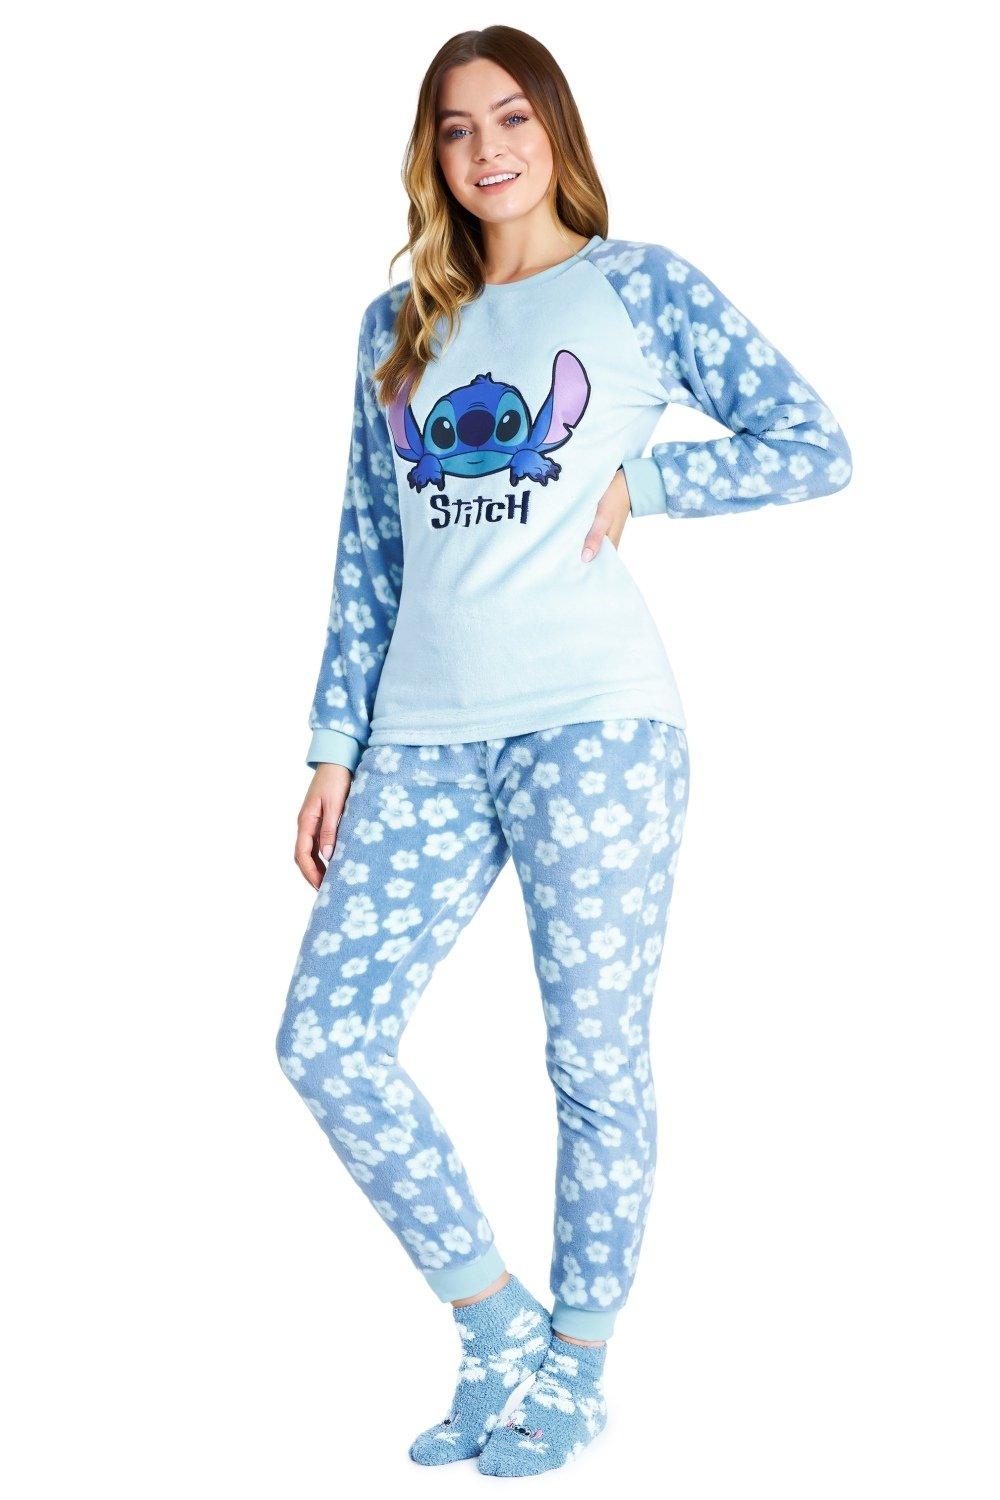 Stitch Winter Pyjama - Sweet Dreams